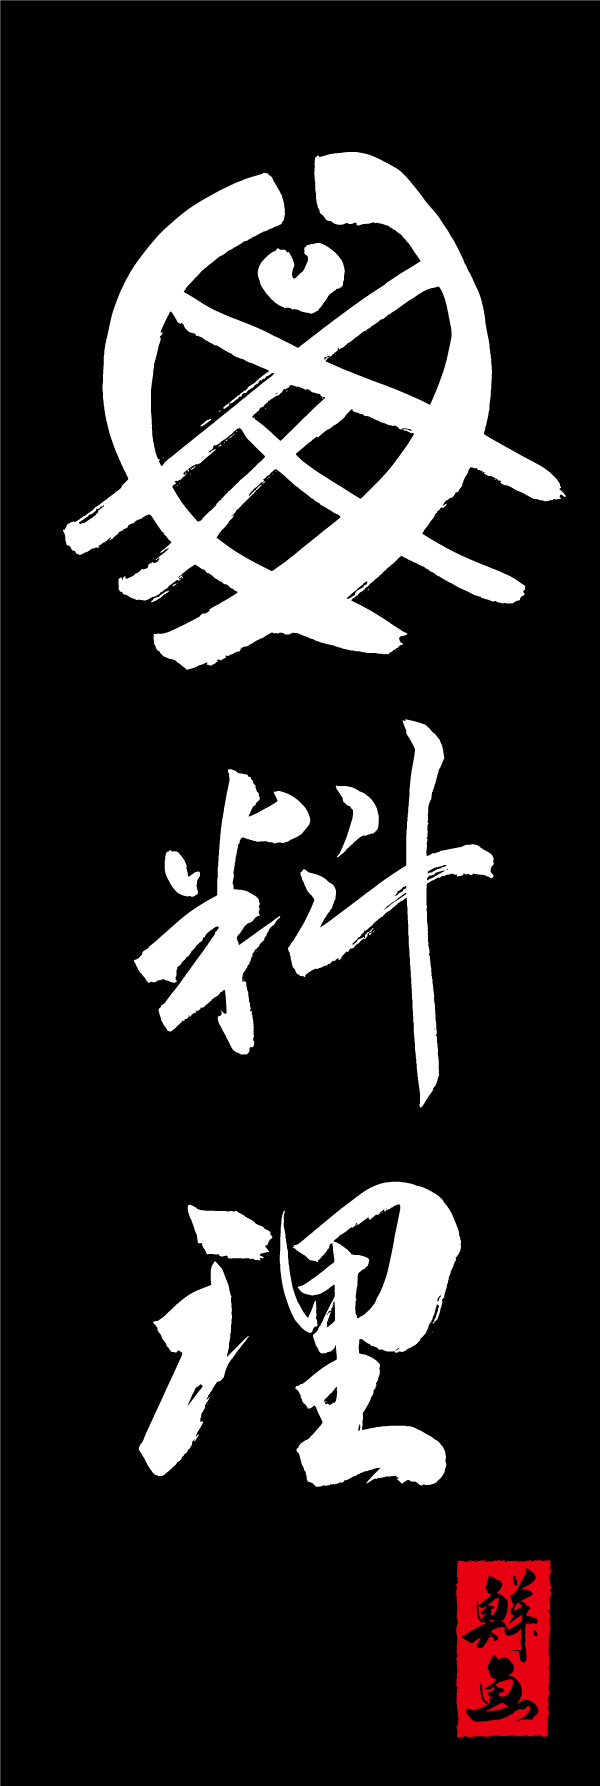 魚料理 156_02 「魚料理」の幟です。江戸文字職人 加藤木大介氏による、手書きの筆文字です。完全書き下ろし、唯一無二の幟は当店だけのオリジナル商品です。（Y.M）